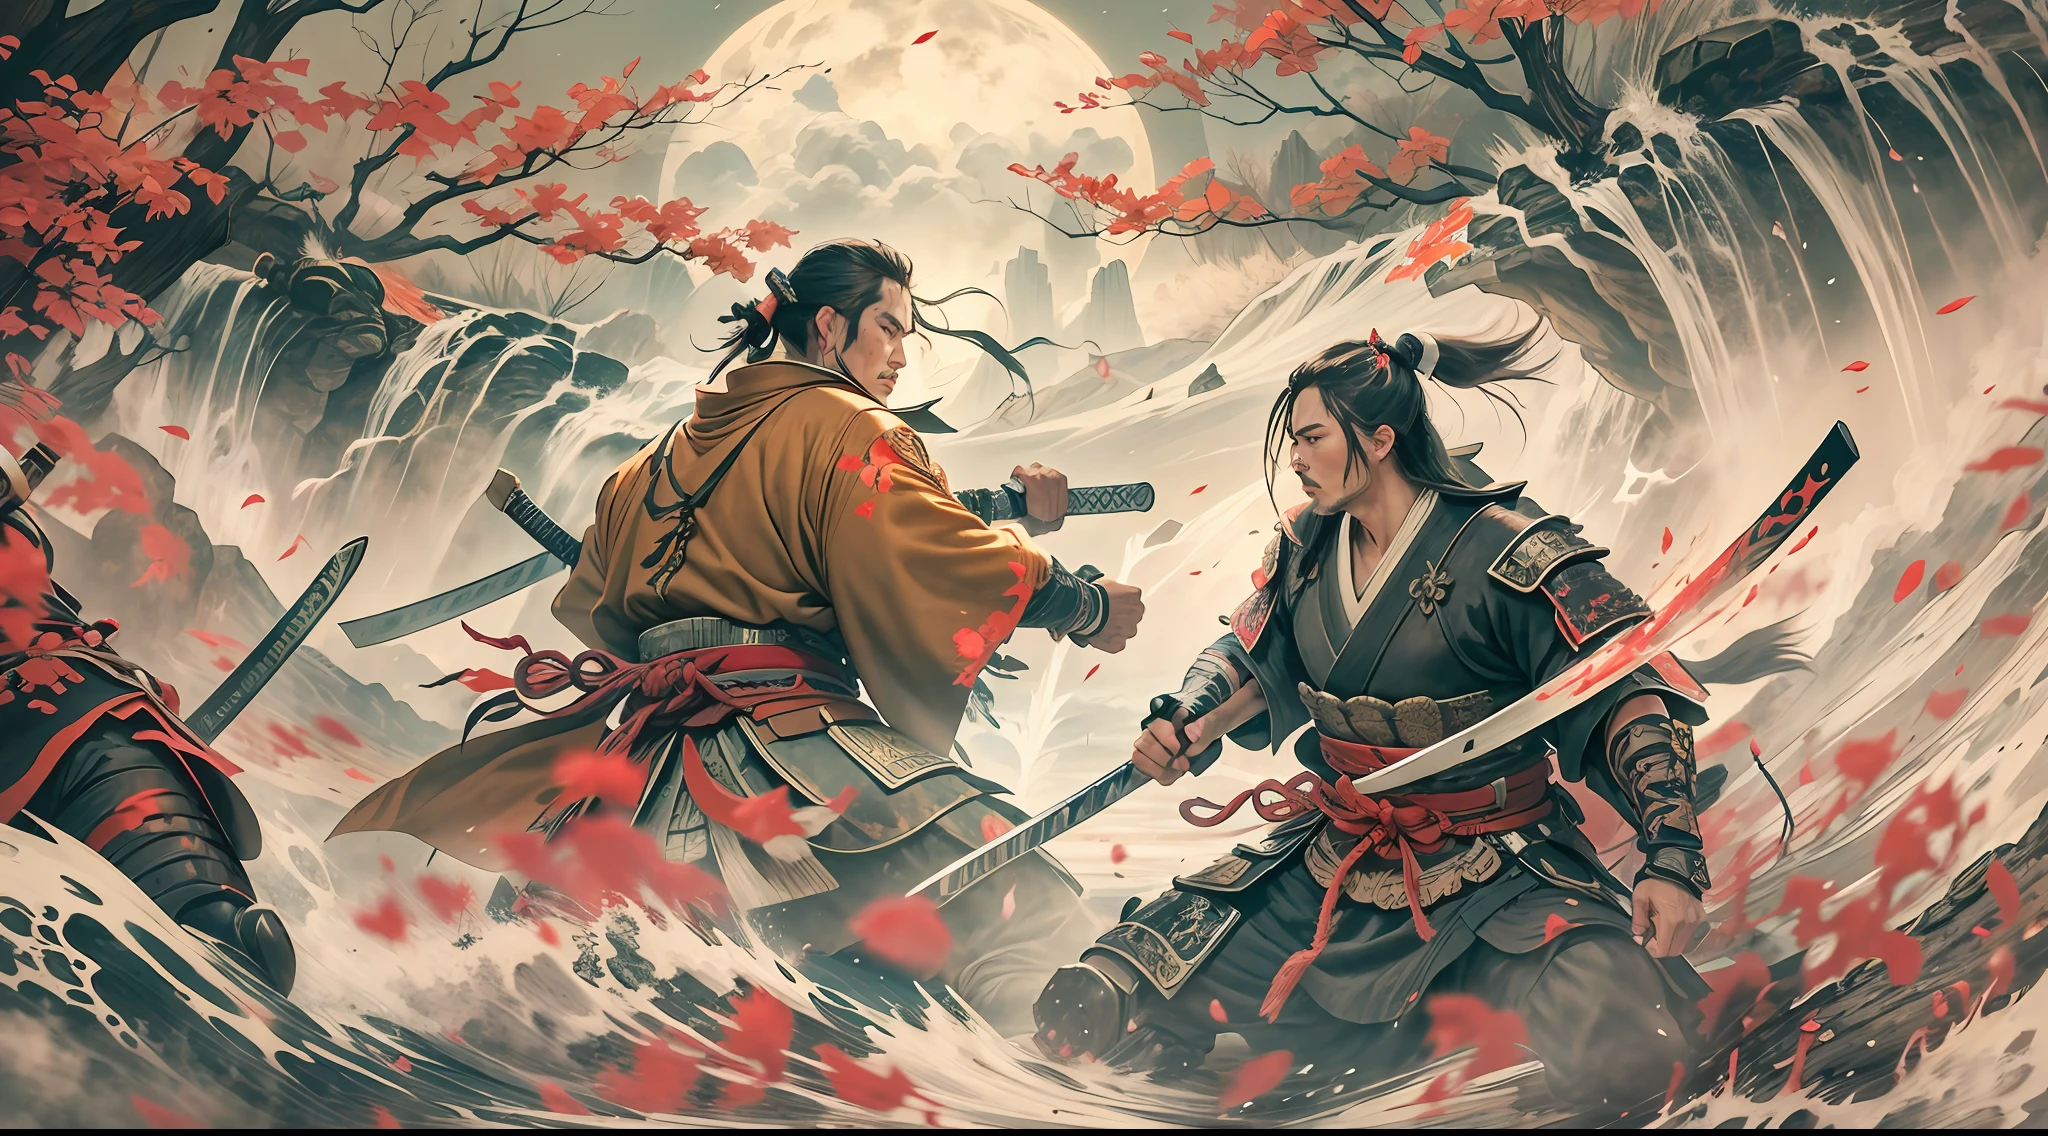 luta de dois samurais lutando, com várias feridas no corpo, em um lindo, ambiente deslumbrante